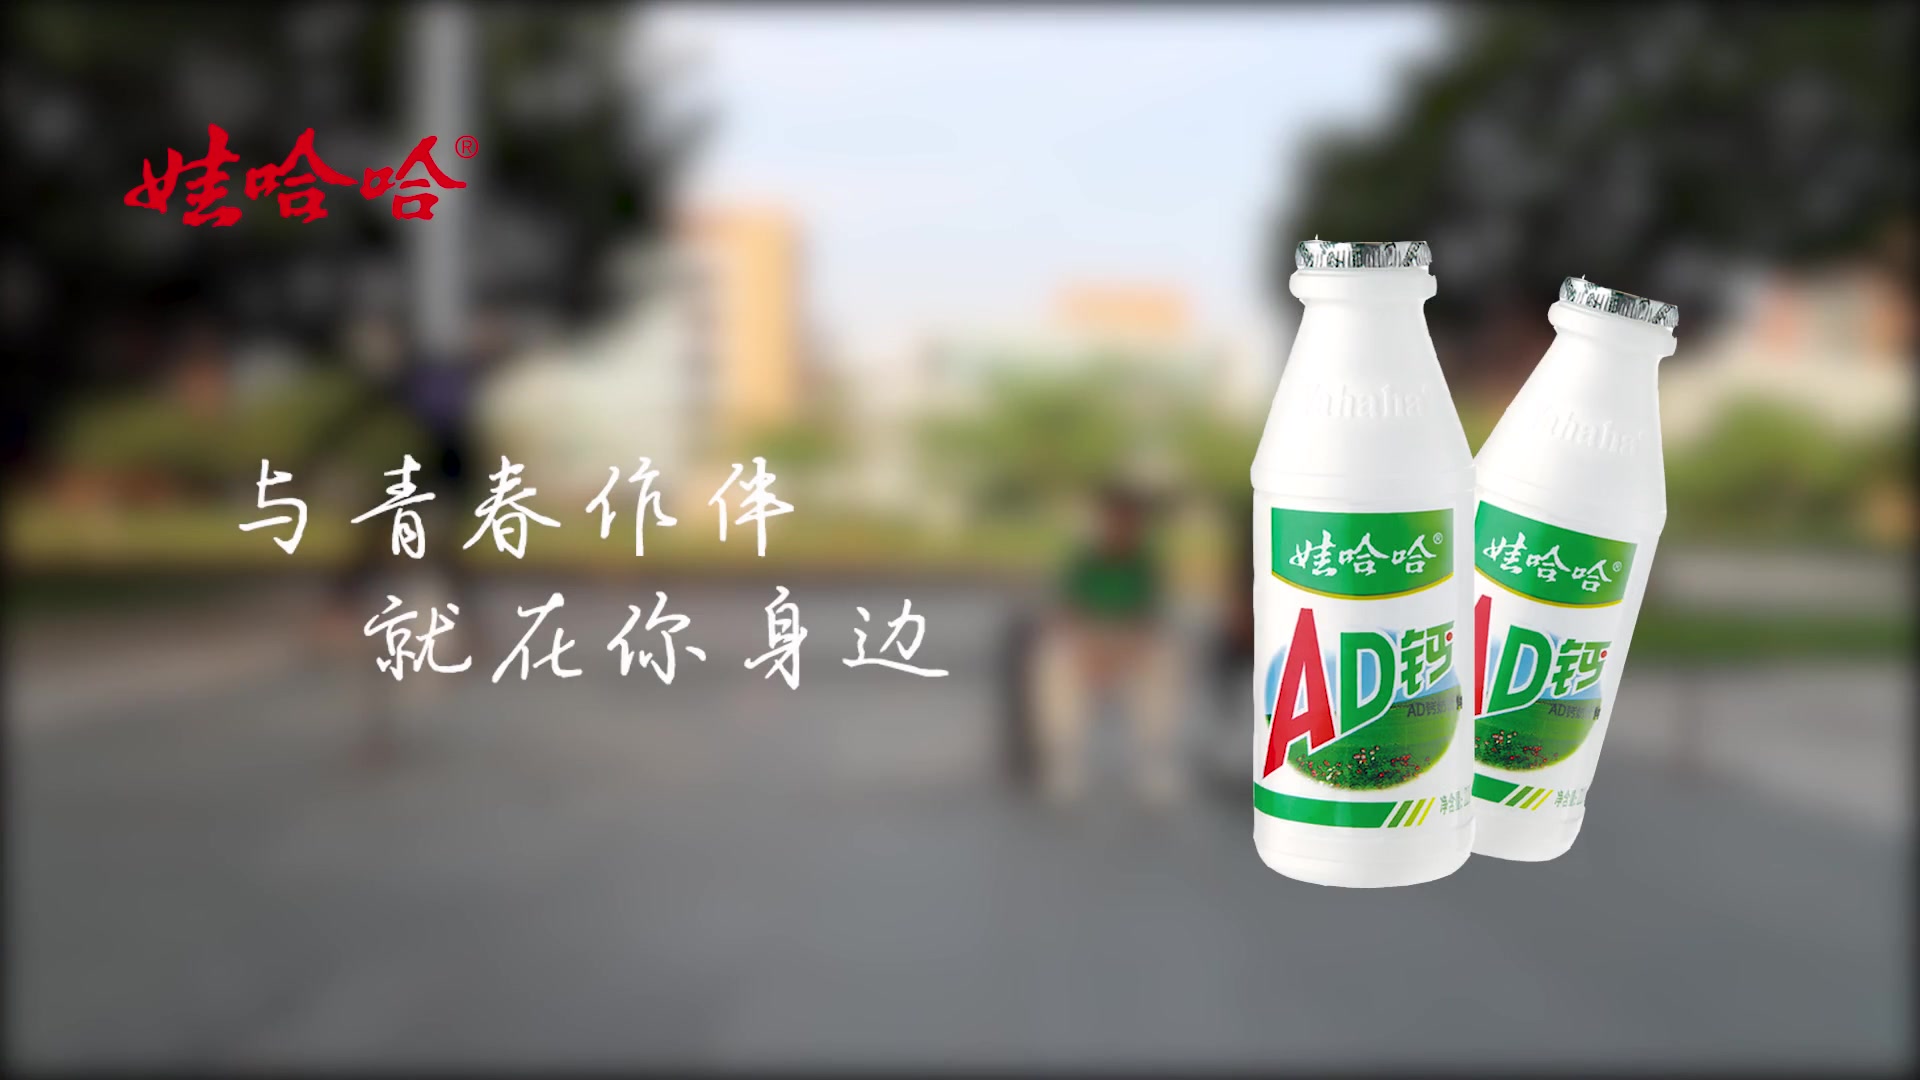 [十一届大广赛作品]哒哒哒哒——开启快乐,娃哈哈ad钙奶广告